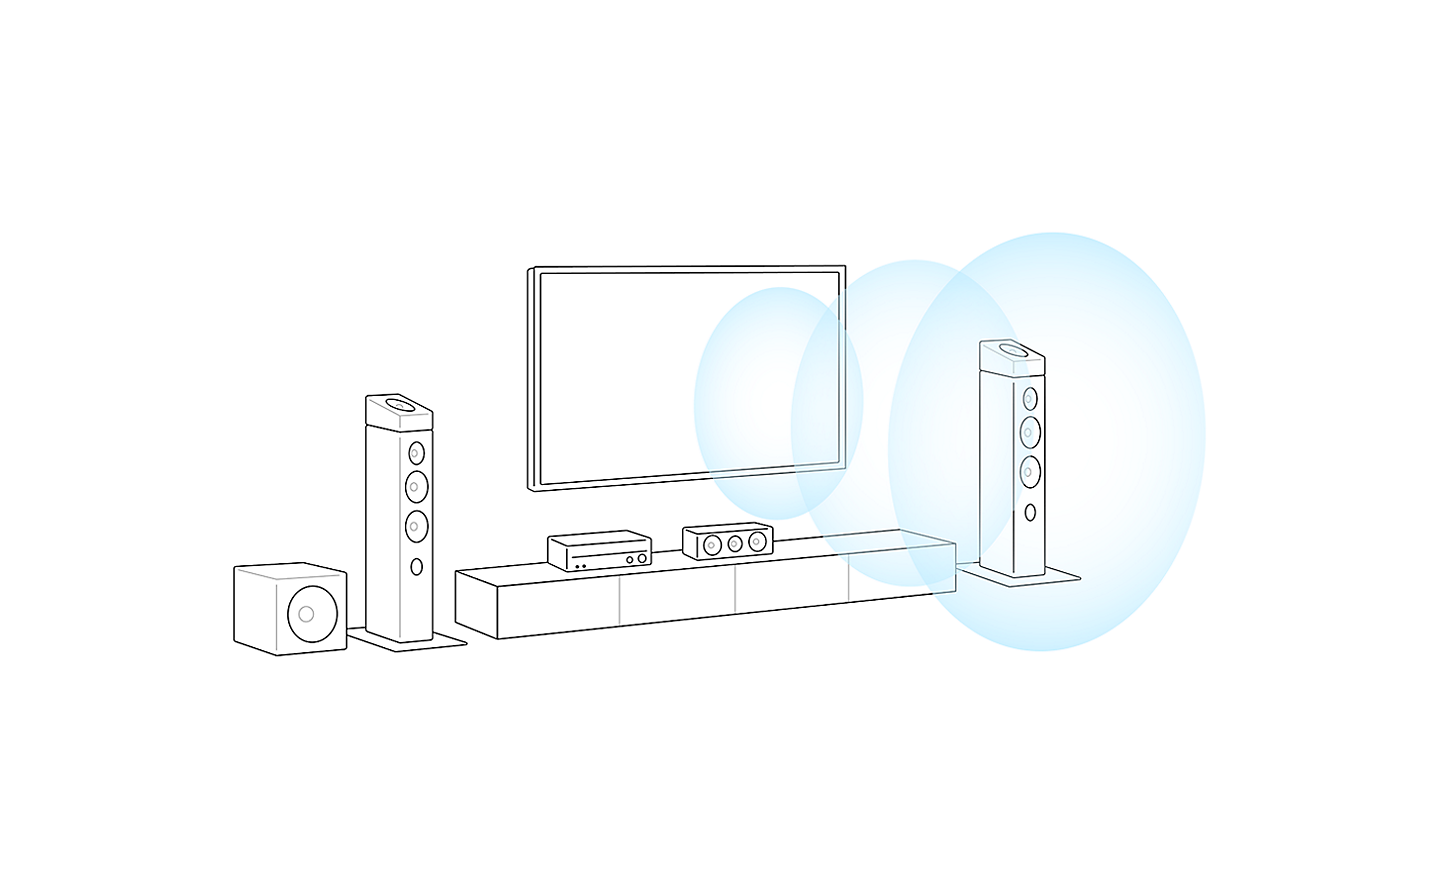 Imagem apenas de contornos de uma configuração de TV. Projetam-se 3 círculos azuis do centro da TV, representando a direção do som